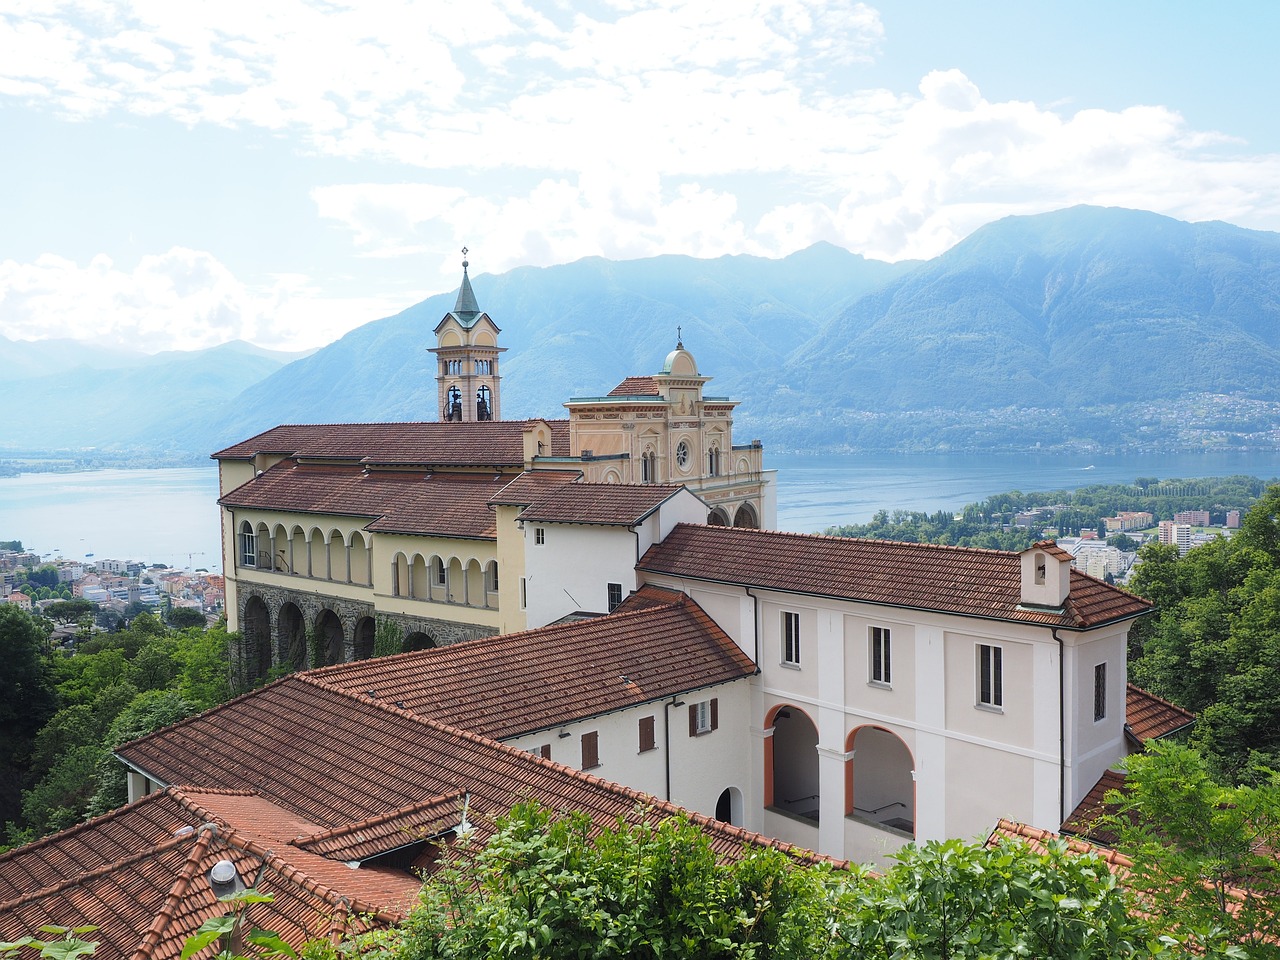 Qual è la città più grande del Canton Ticino?